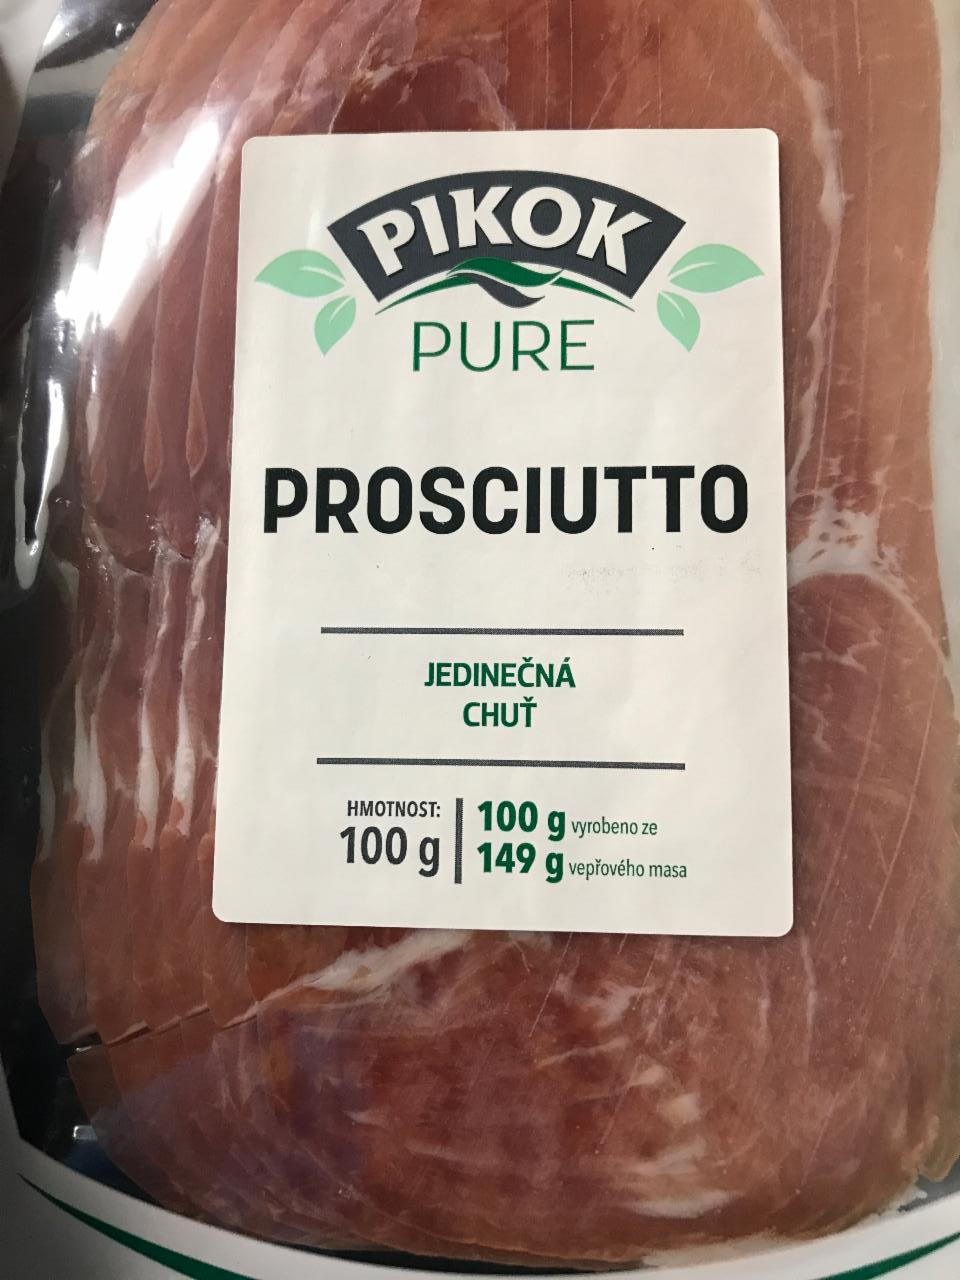 Фото - Прошуто Prosciutto Pikok Pure